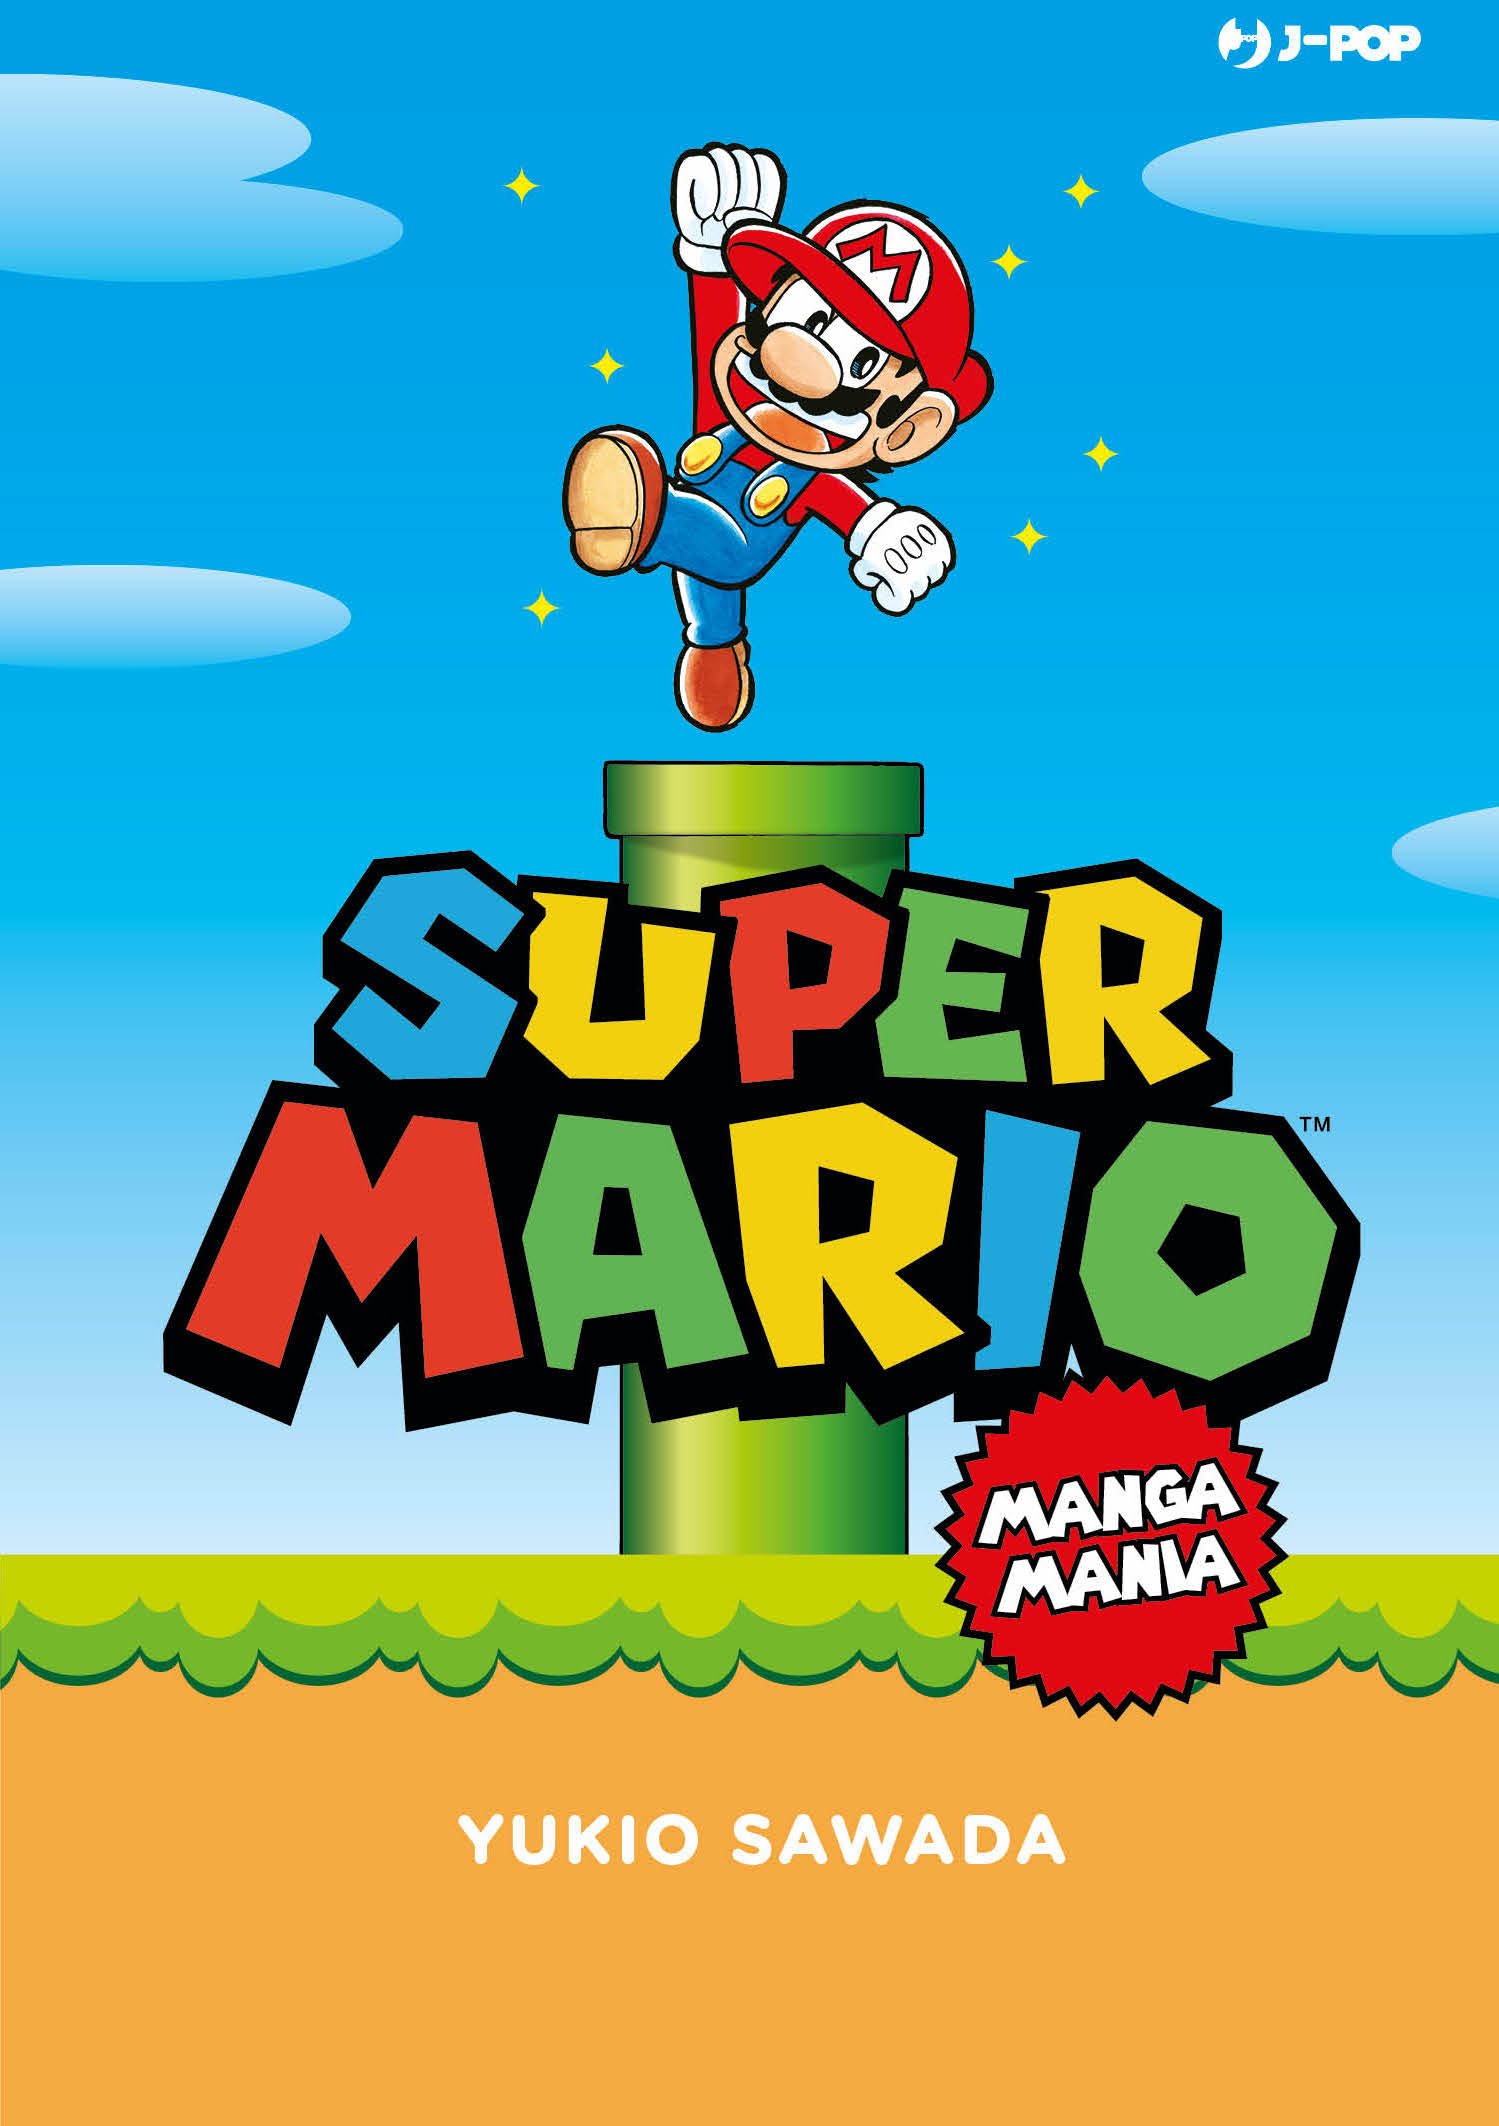 Super Mario Mangamania, tra le novità J-Pop Manga di Marzo 2022